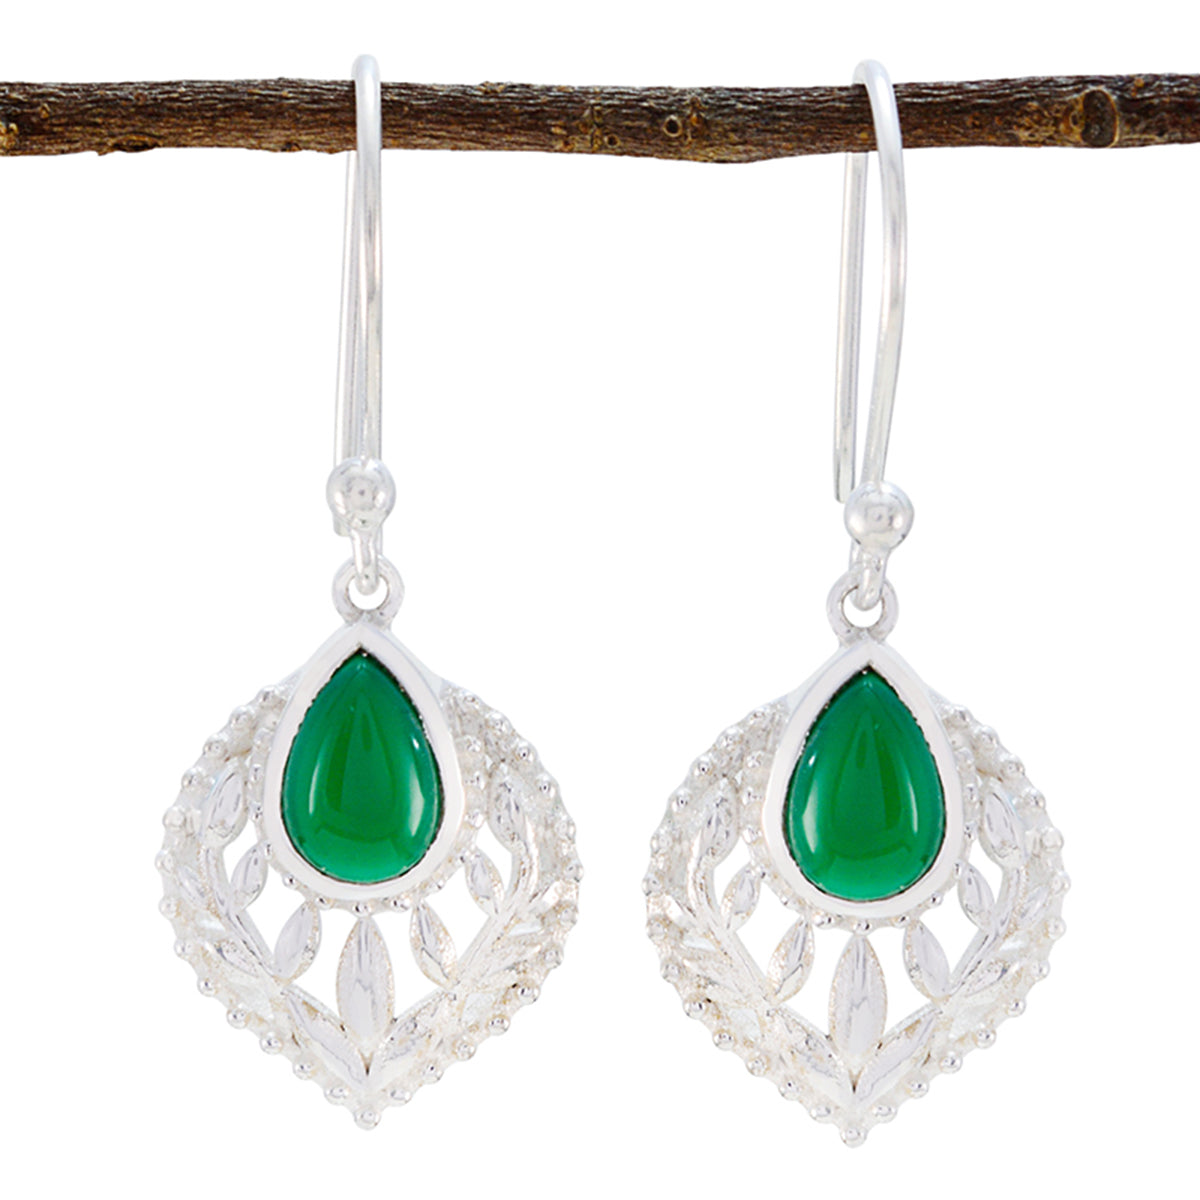 Riyo Genuine Gems Pear Cabochon Green Onyx Silver Earring gift for christmas